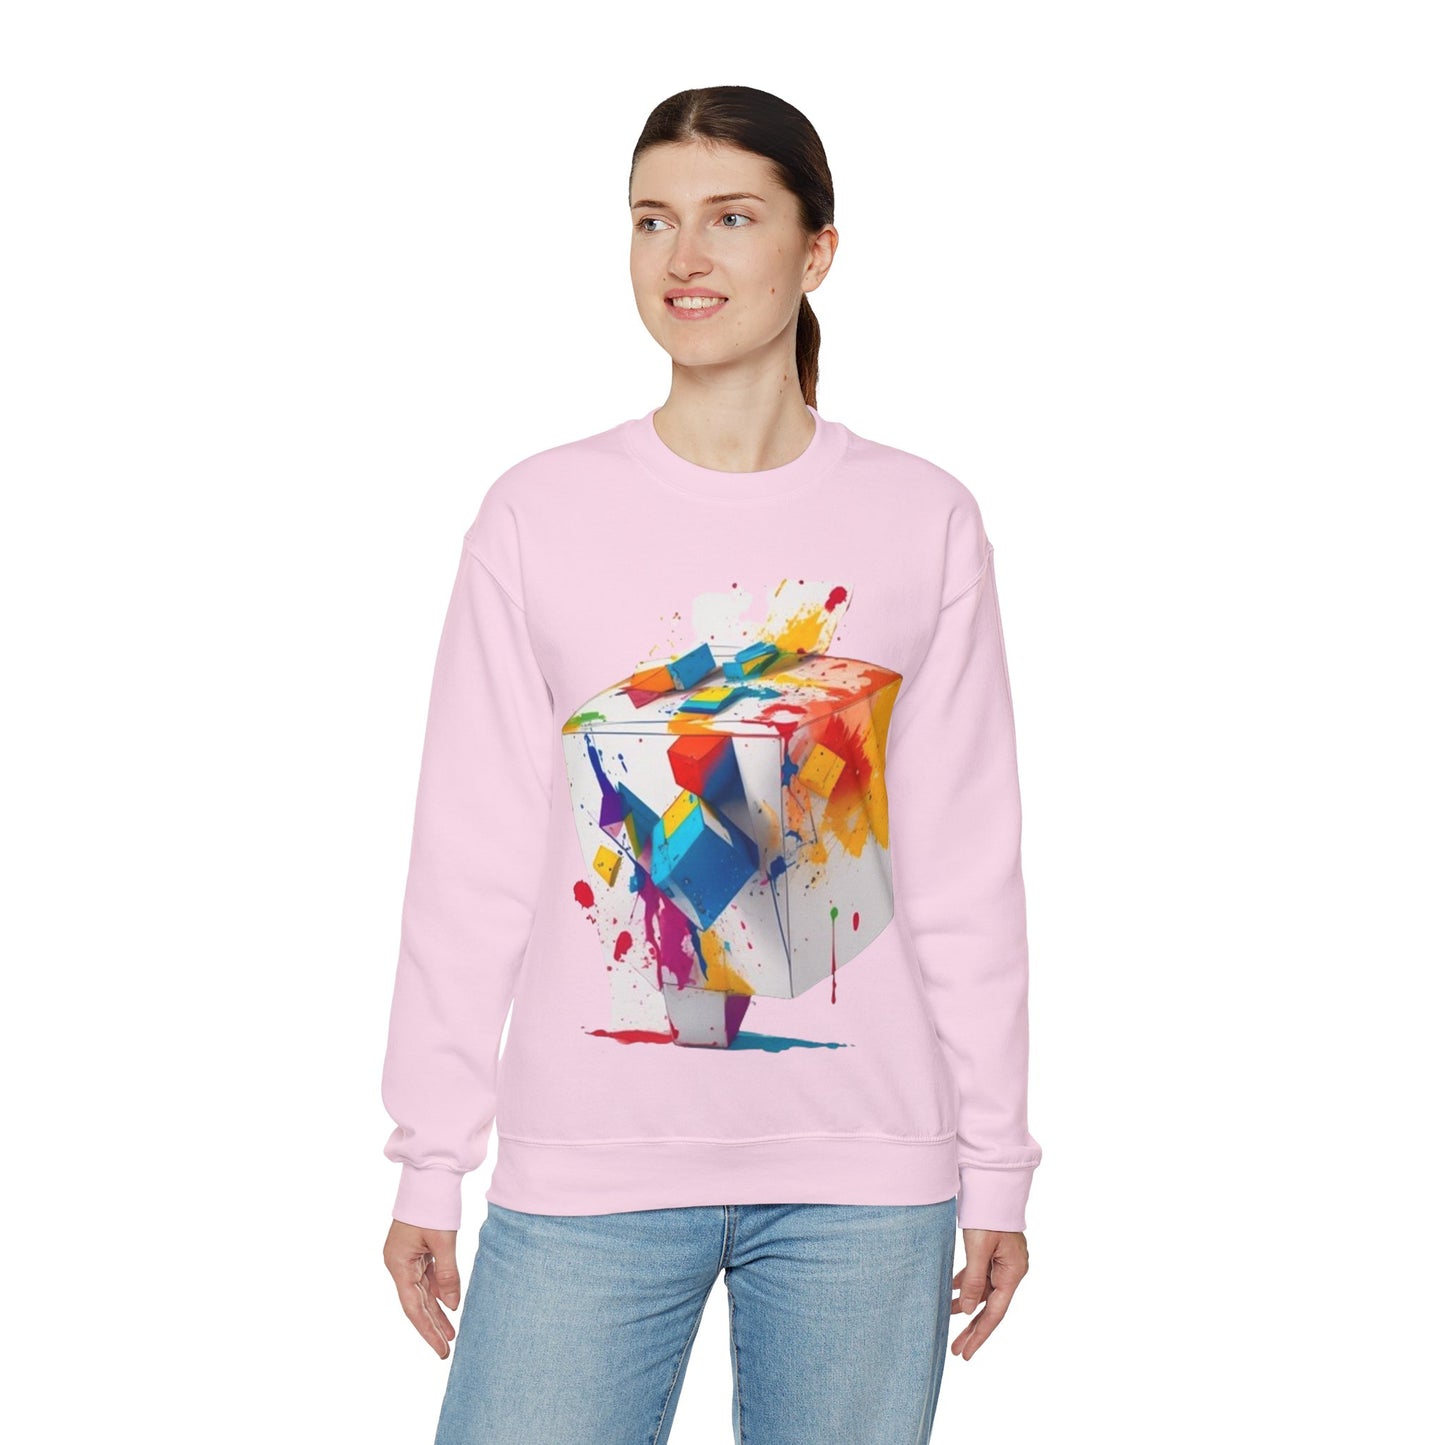 Colourful Cube - Unisex Crewneck Sweatshirt